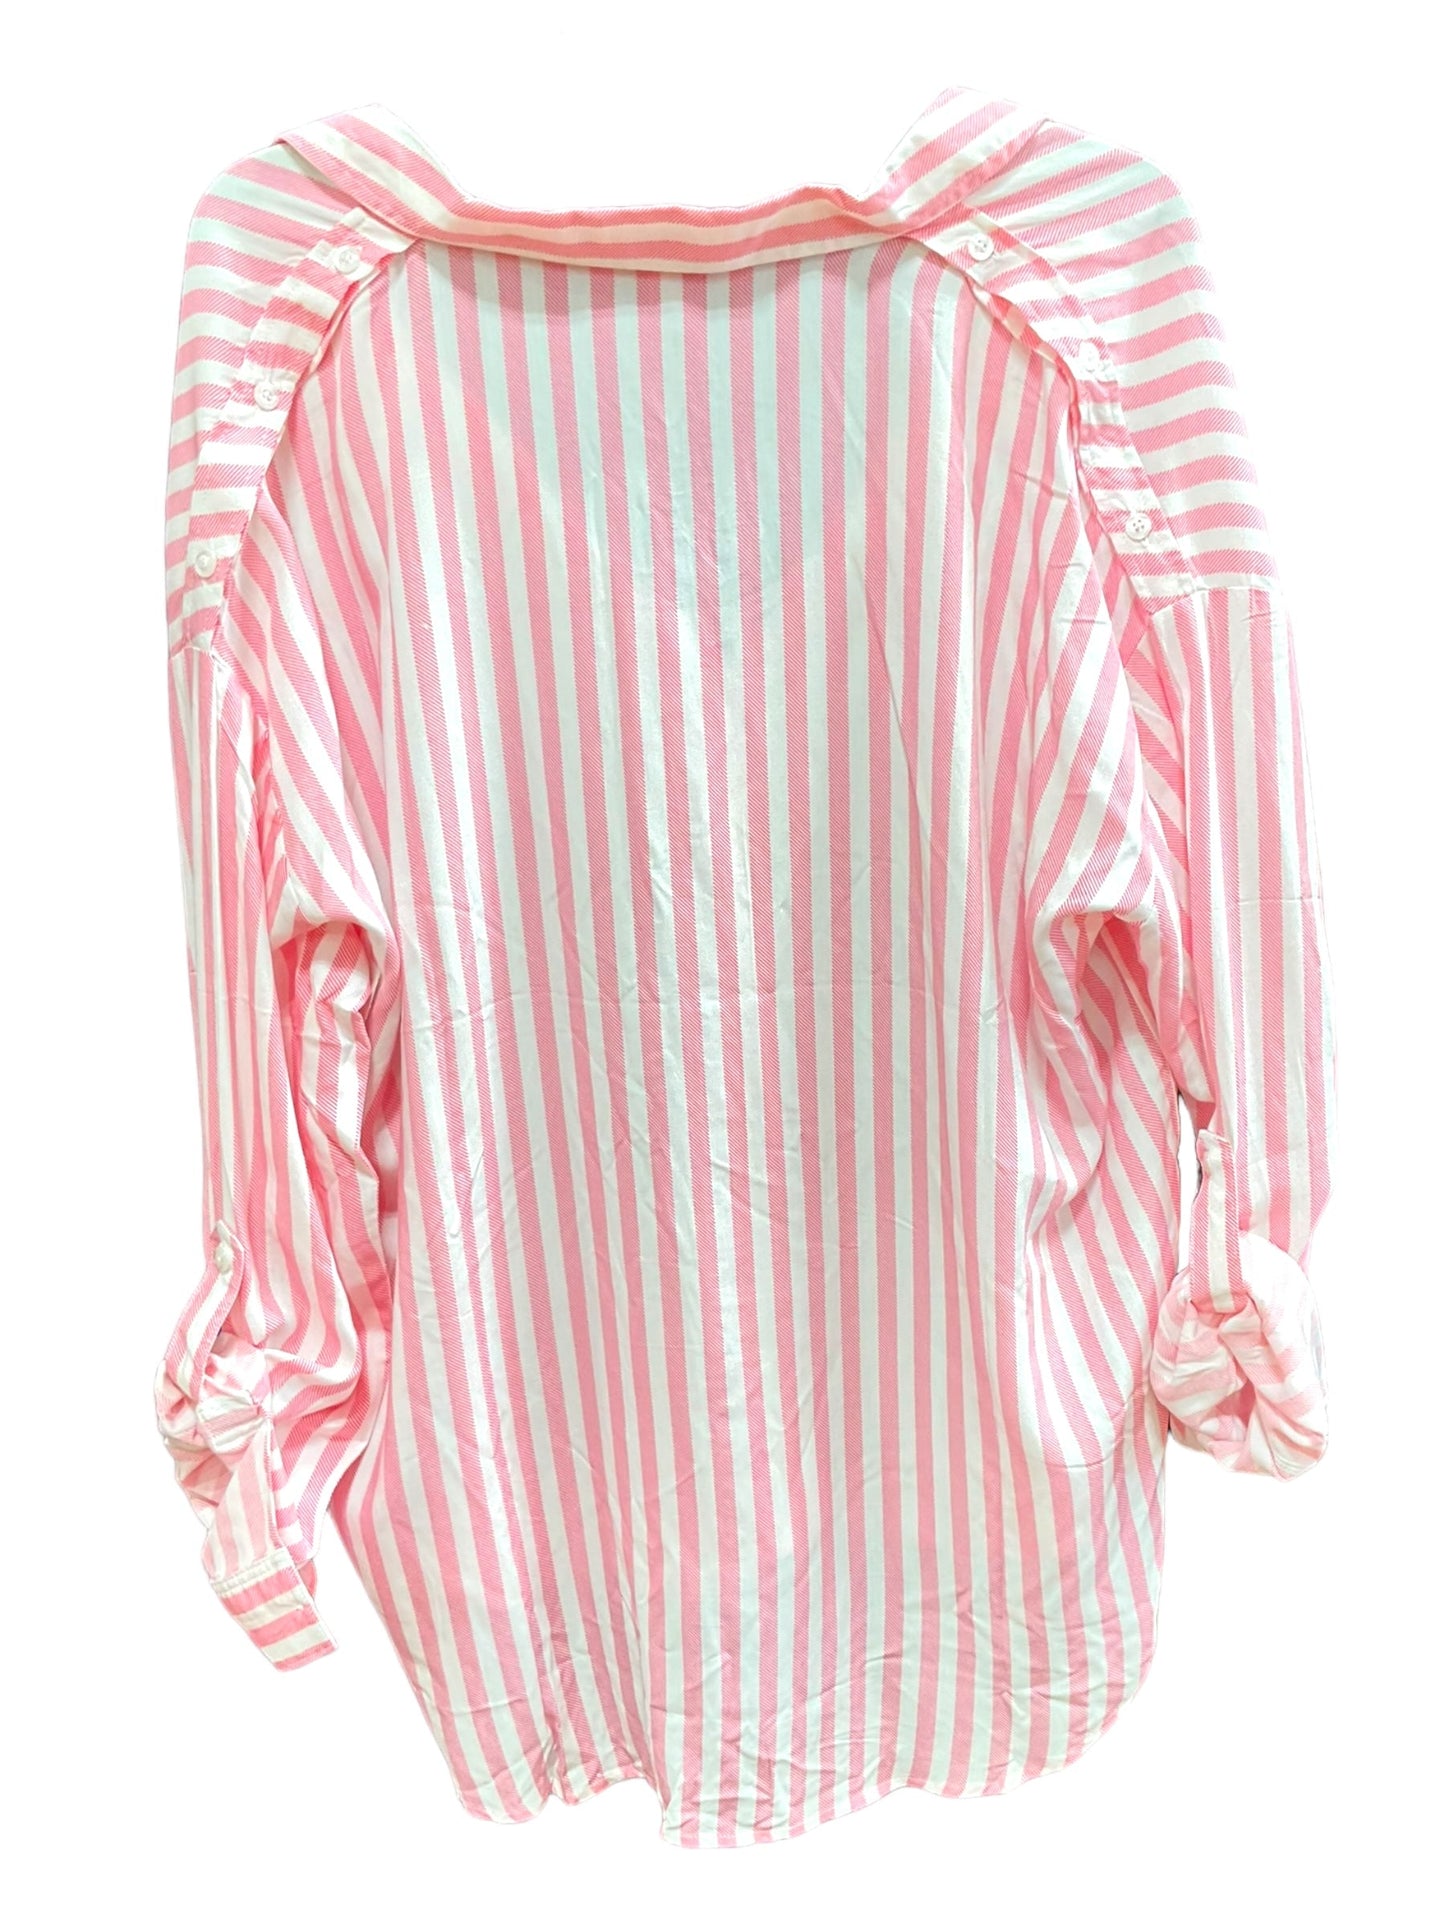 Striped Pattern Blouse Long Sleeve Fashion Nova, Size 1x